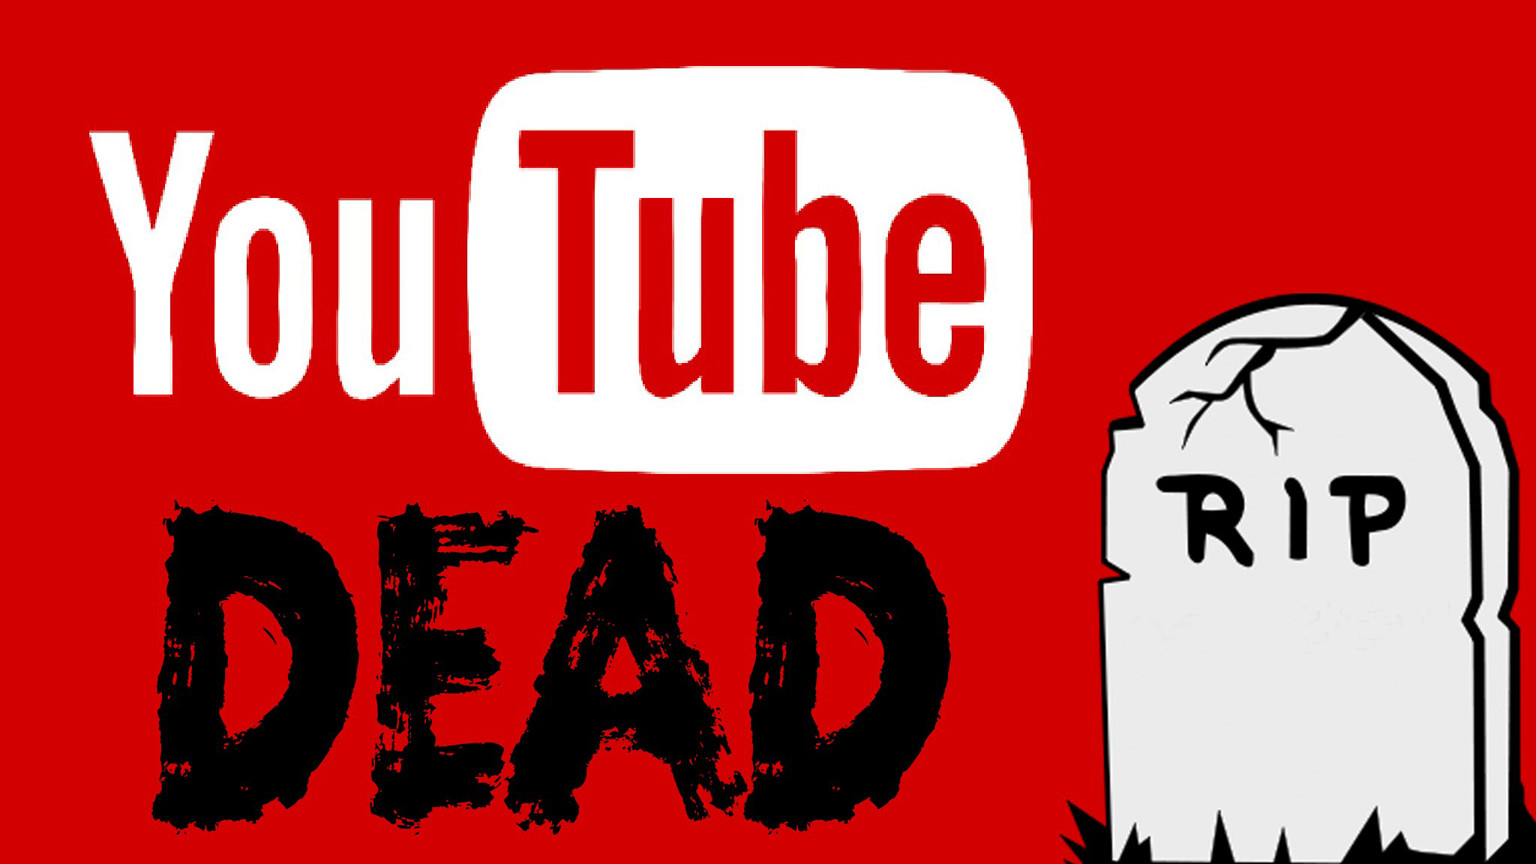 youtube-dead-lbry.jpg